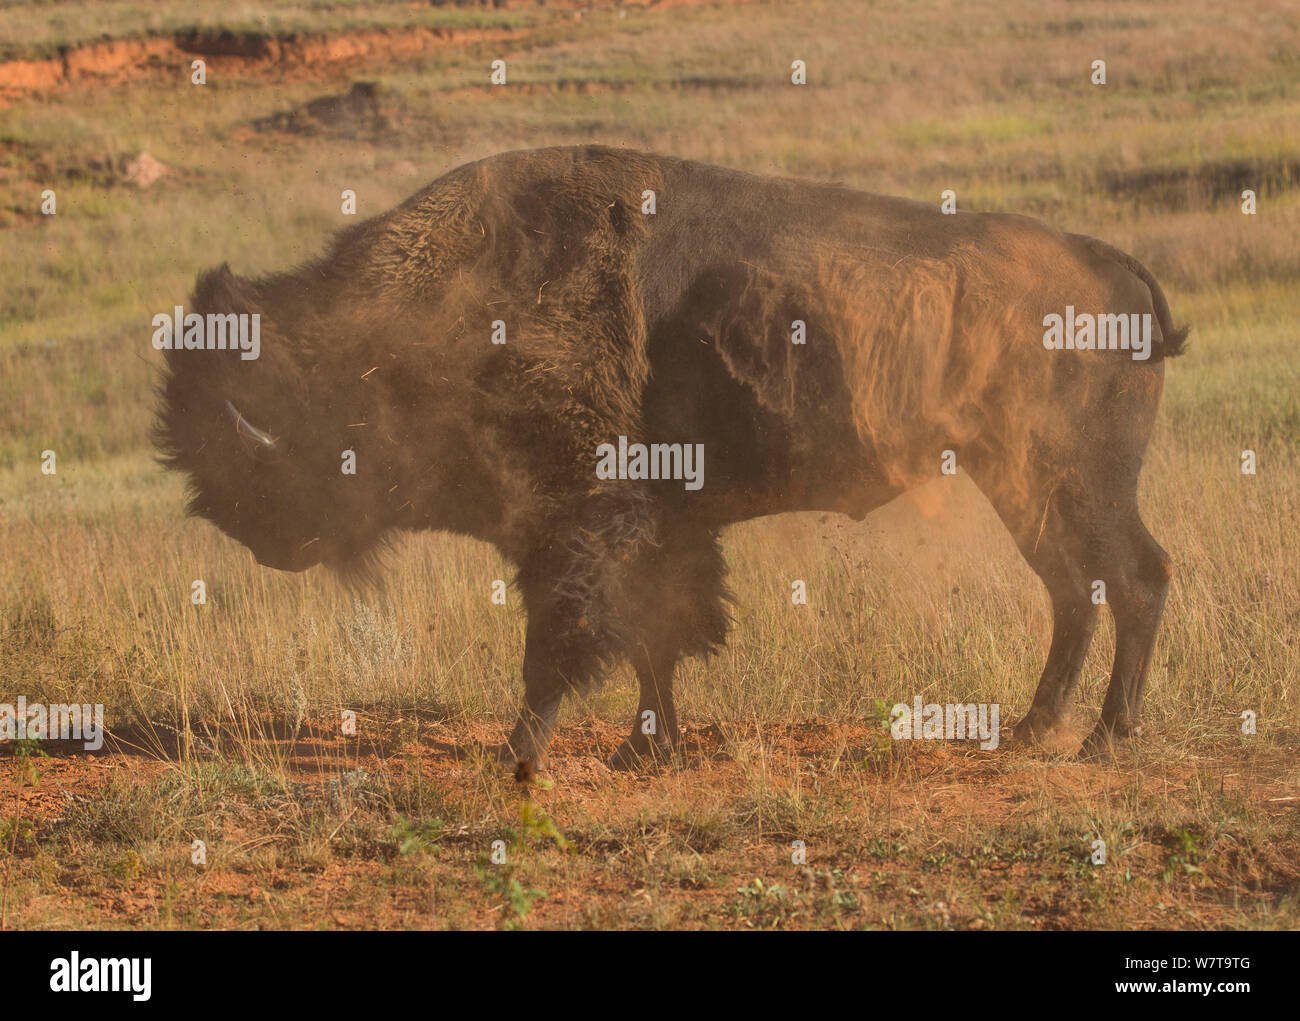 Bufalo americano (Bison bison) agitando off dopo la laminazione in sporco in essa aveva preparato da hoofing il suolo, urinare e quindi la laminazione. Questo comportamento è associato con la stagione degli amori. Parco nazionale della Grotta del Vento, South Dakota. Foto Stock